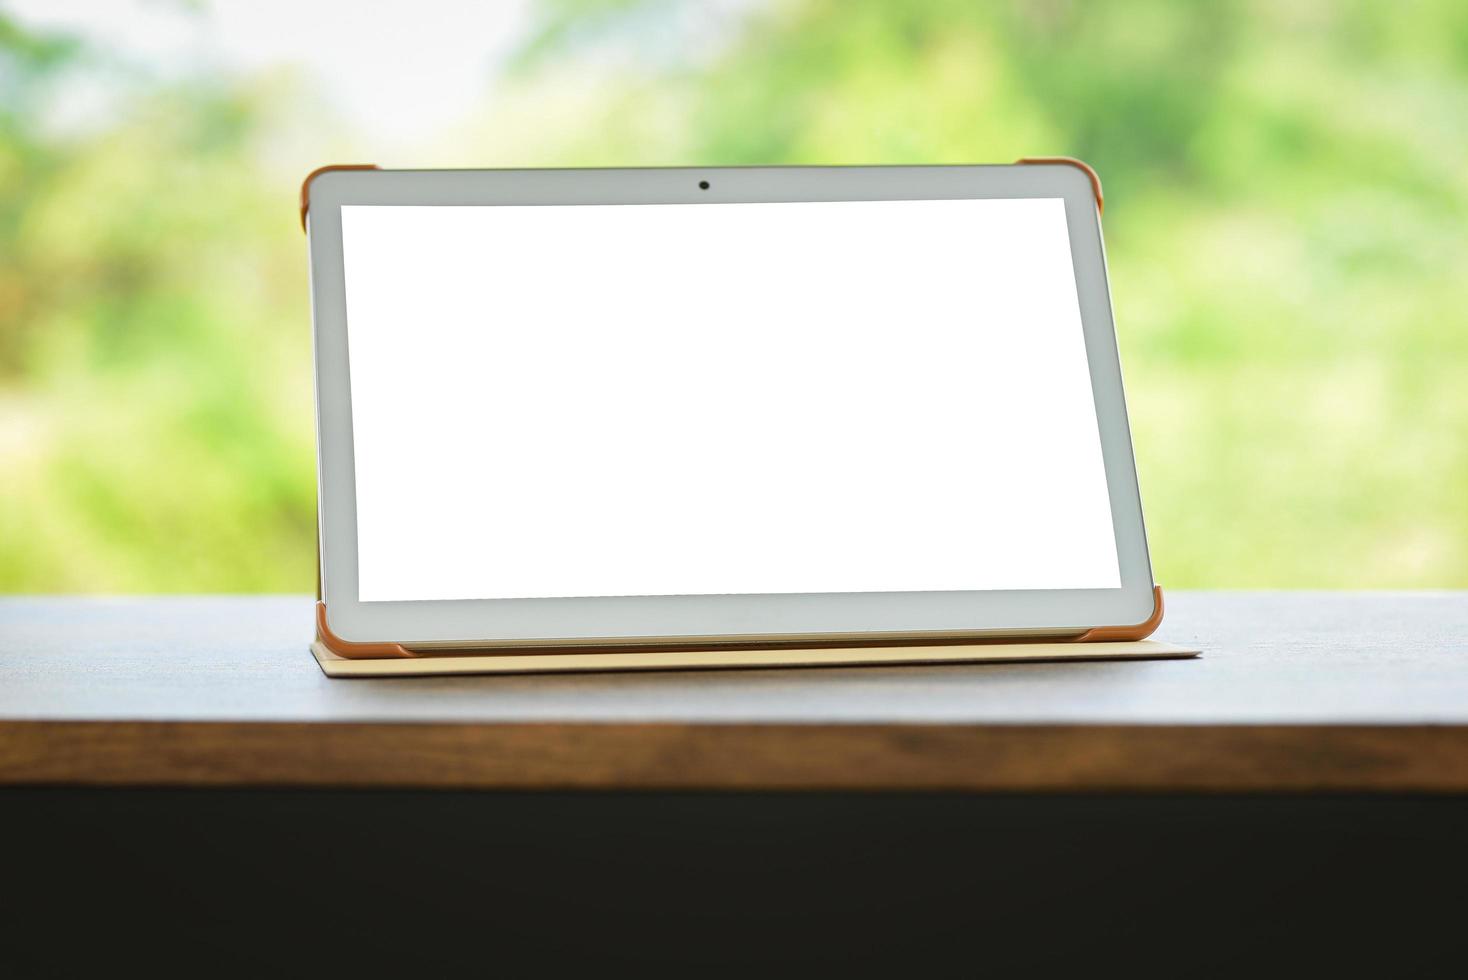 tablet na tela isolada da mesa - computador digital tablet ou tela em branco do laptop na mesa natureza fundo verde foto